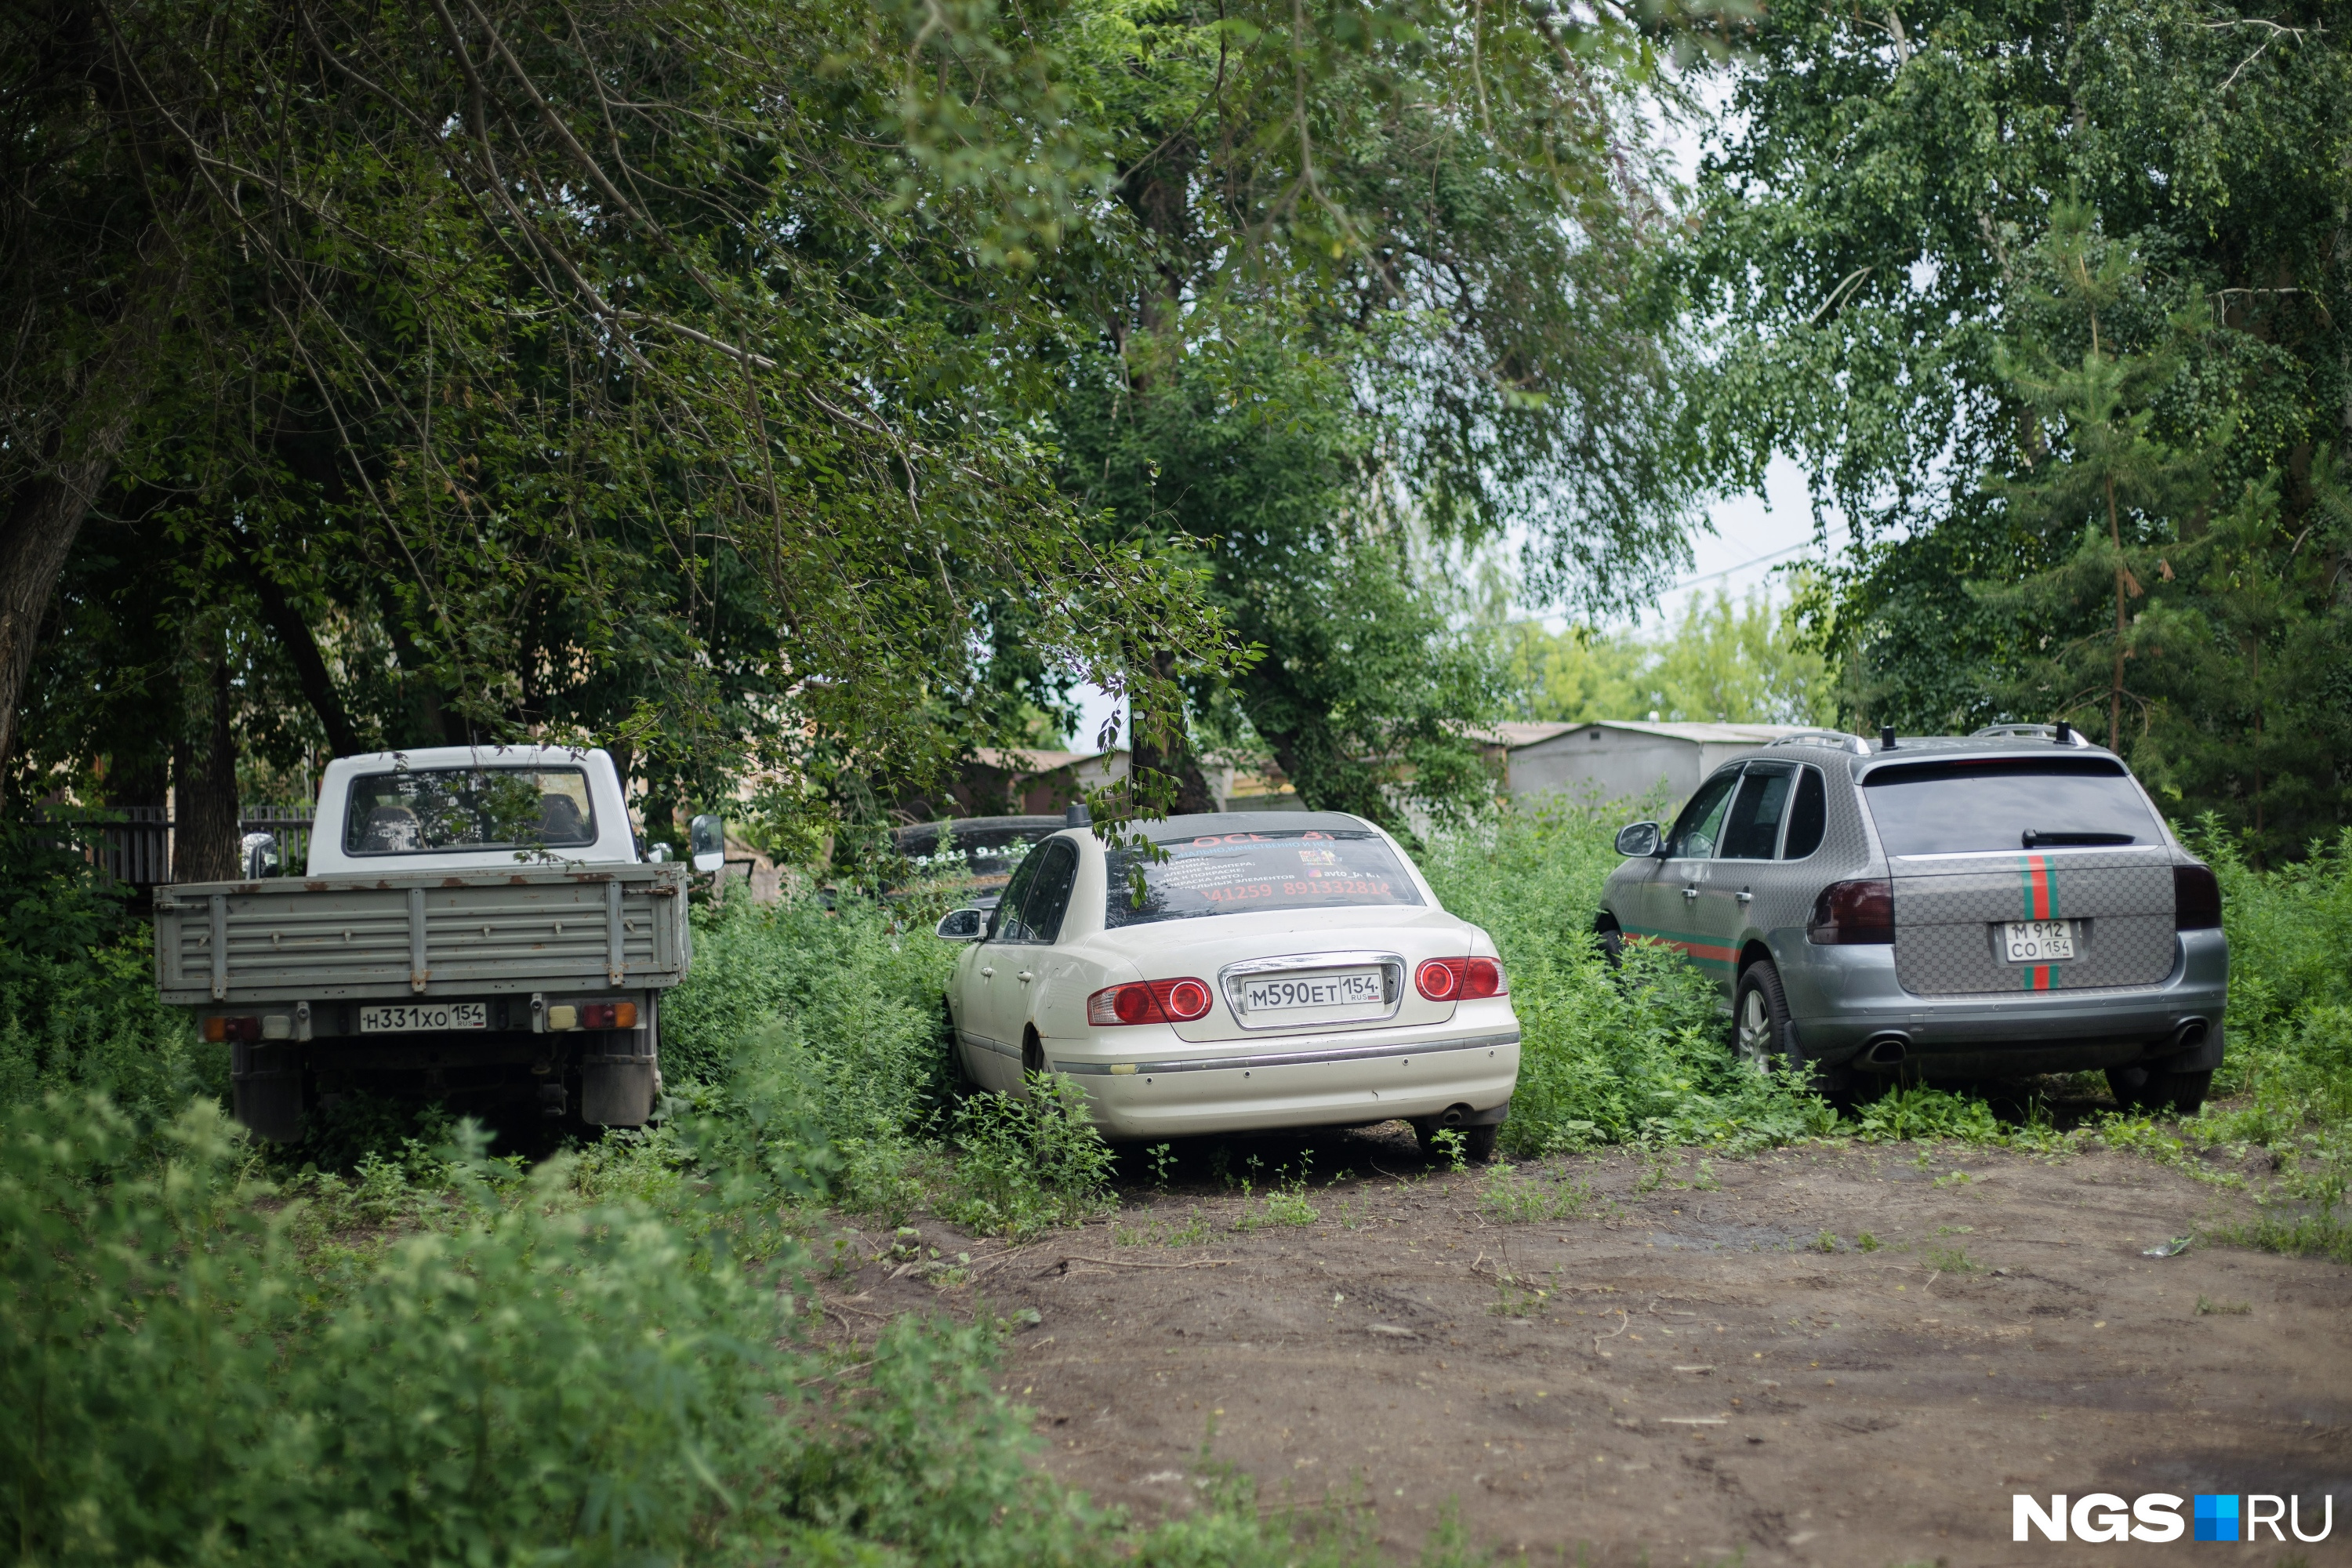 Жители недовольны тем, что теперь им приходится оставлять свои автомобили за воротами дома